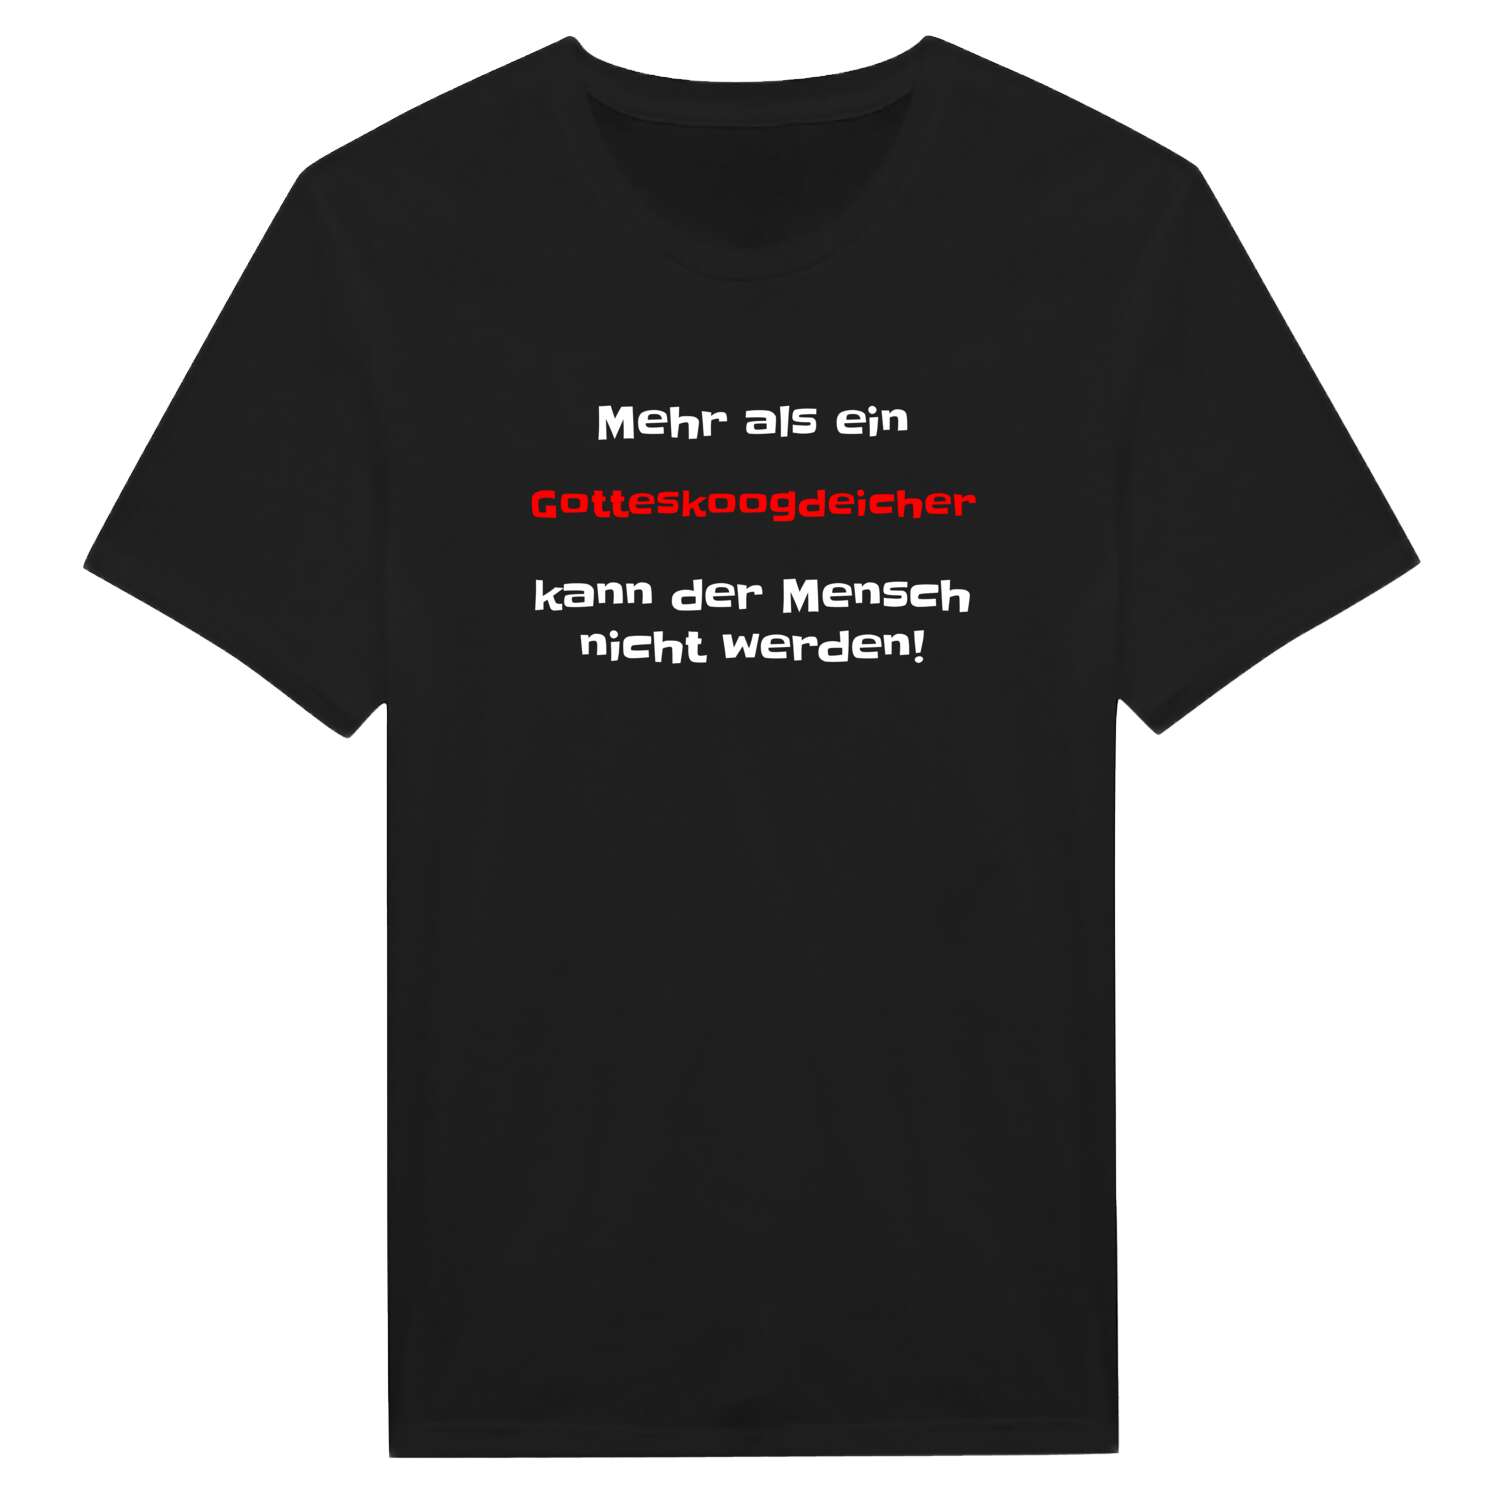 Gotteskoogdeich T-Shirt »Mehr als ein«